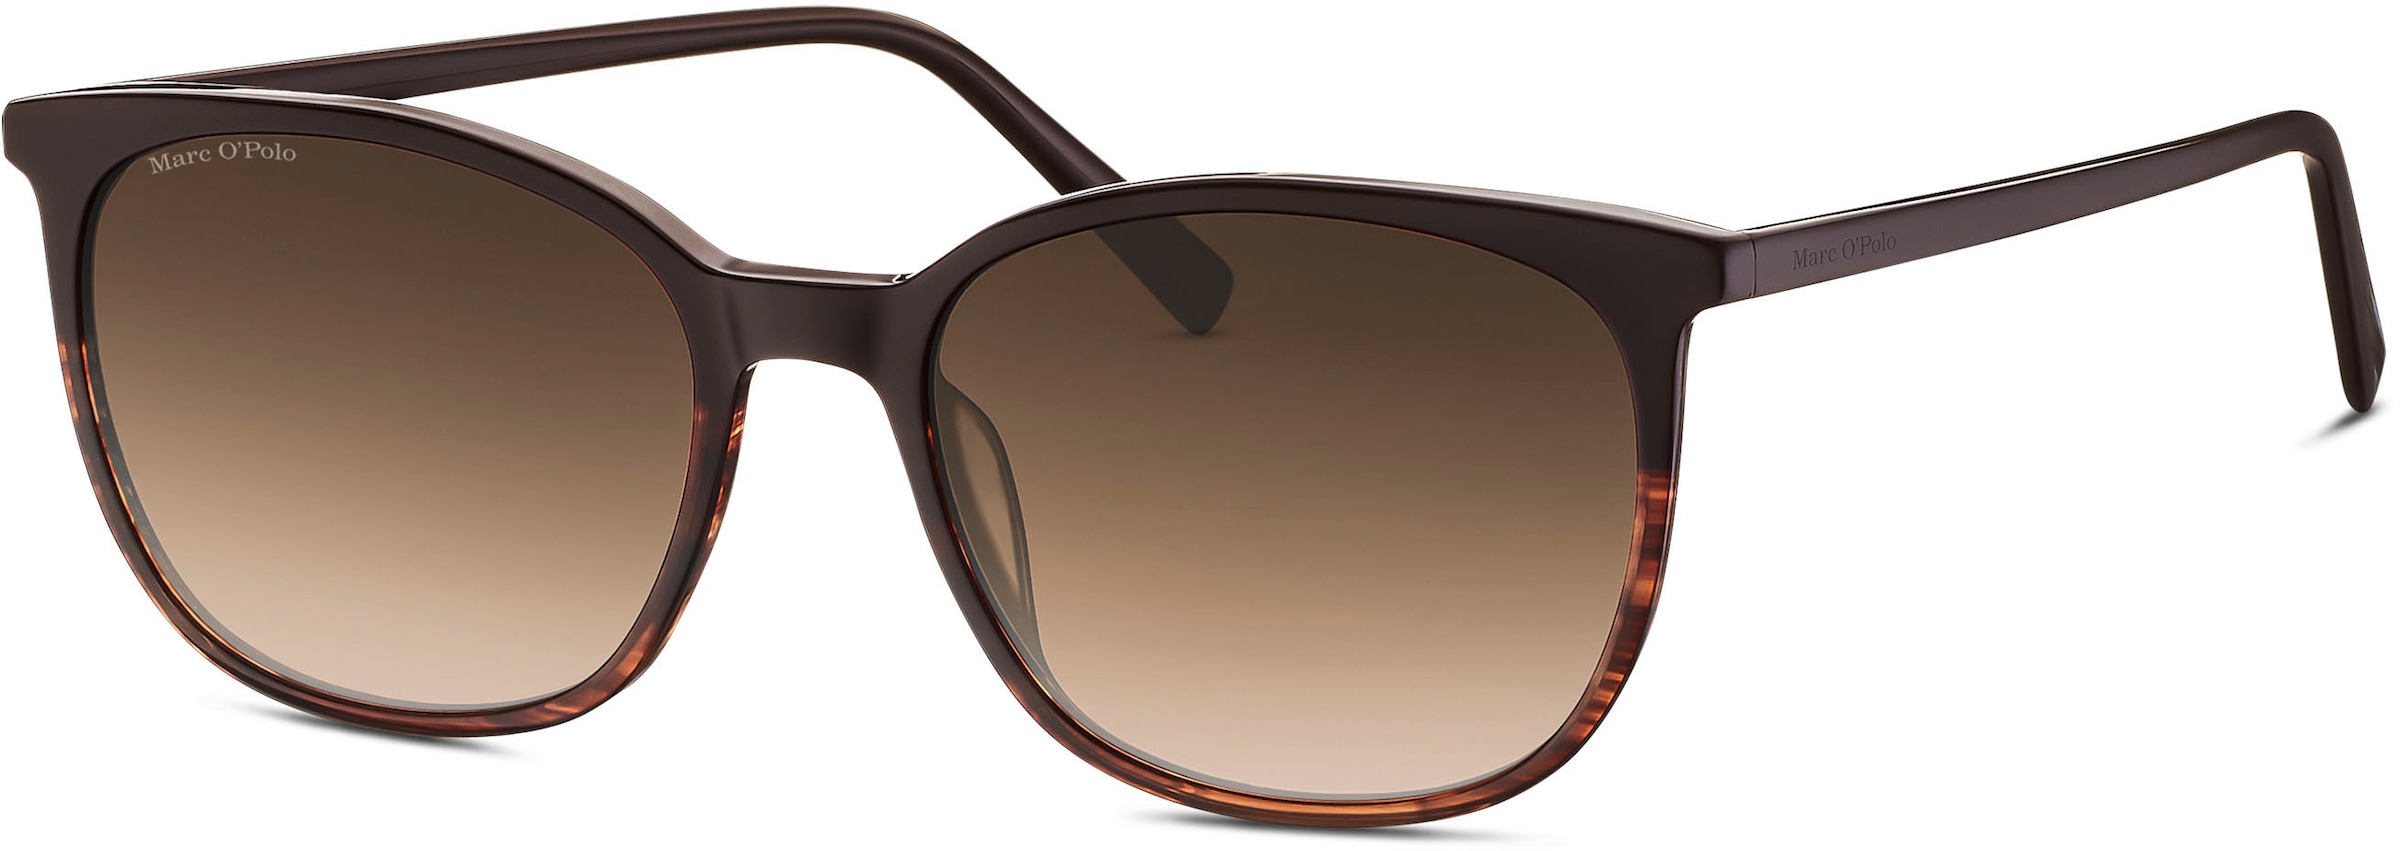 Marc O'Polo Sonnenbrille »Modell 506188«